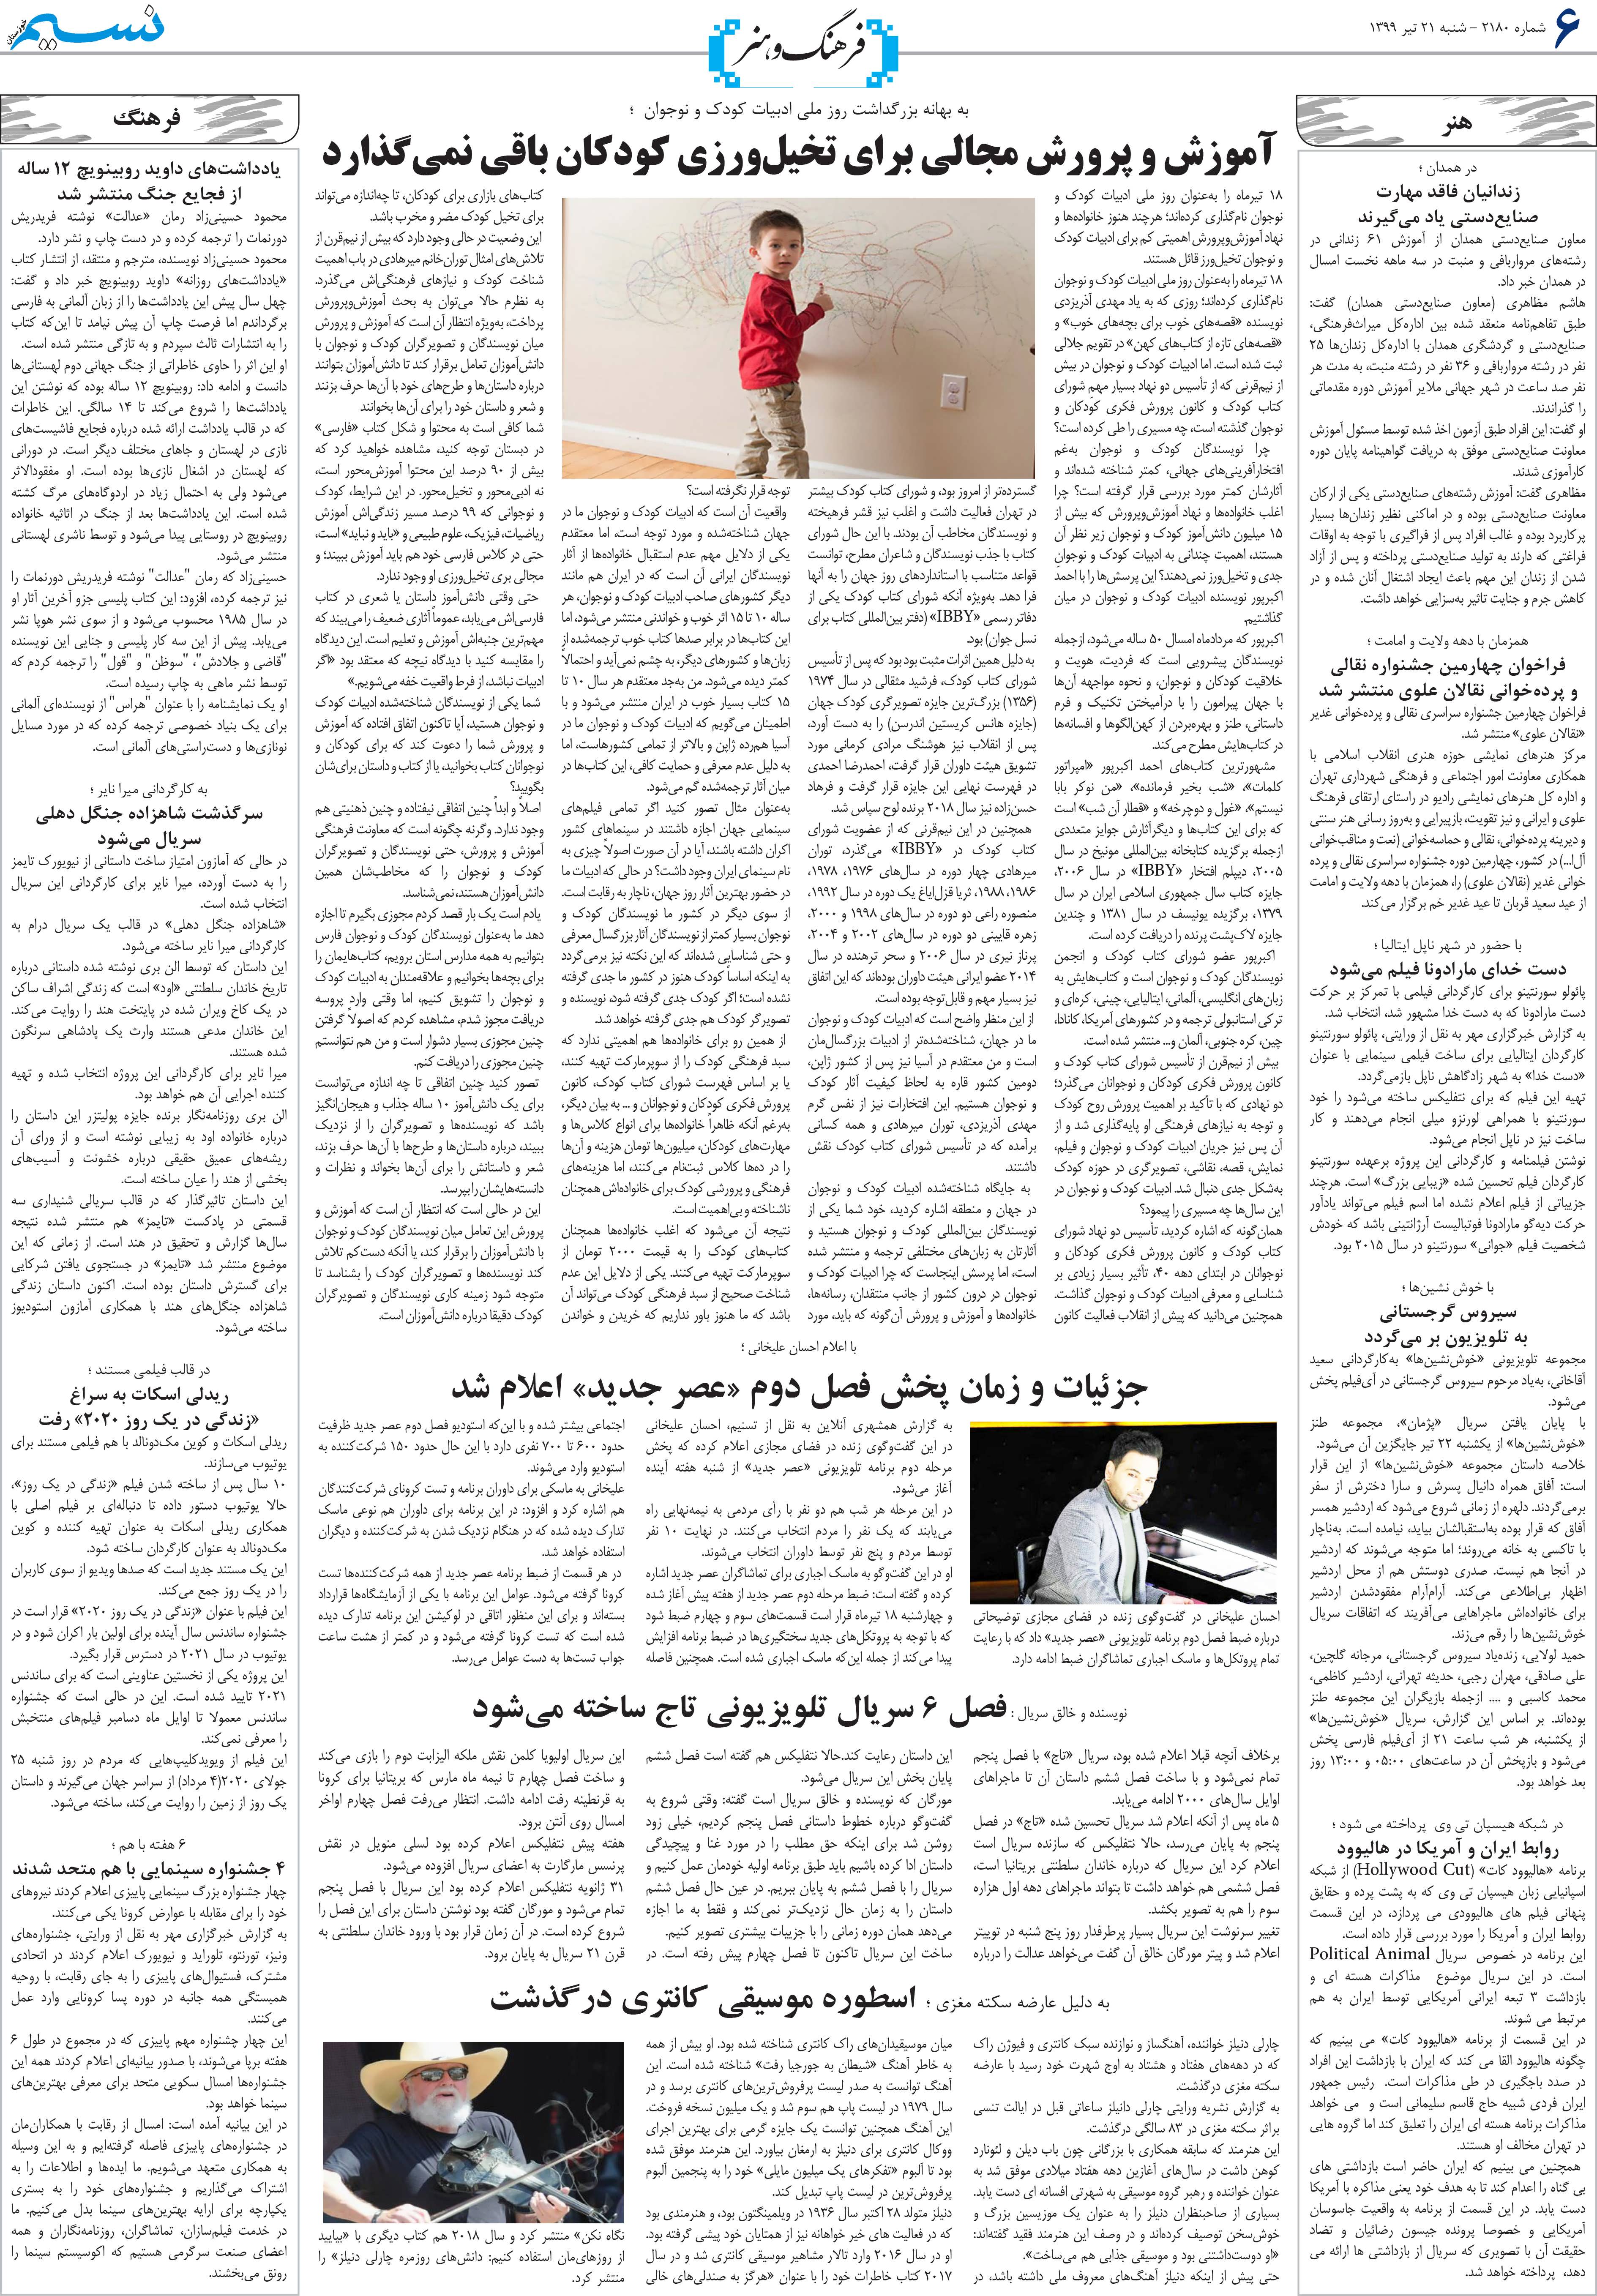 صفحه فرهنگ و هنر روزنامه نسیم شماره 2180